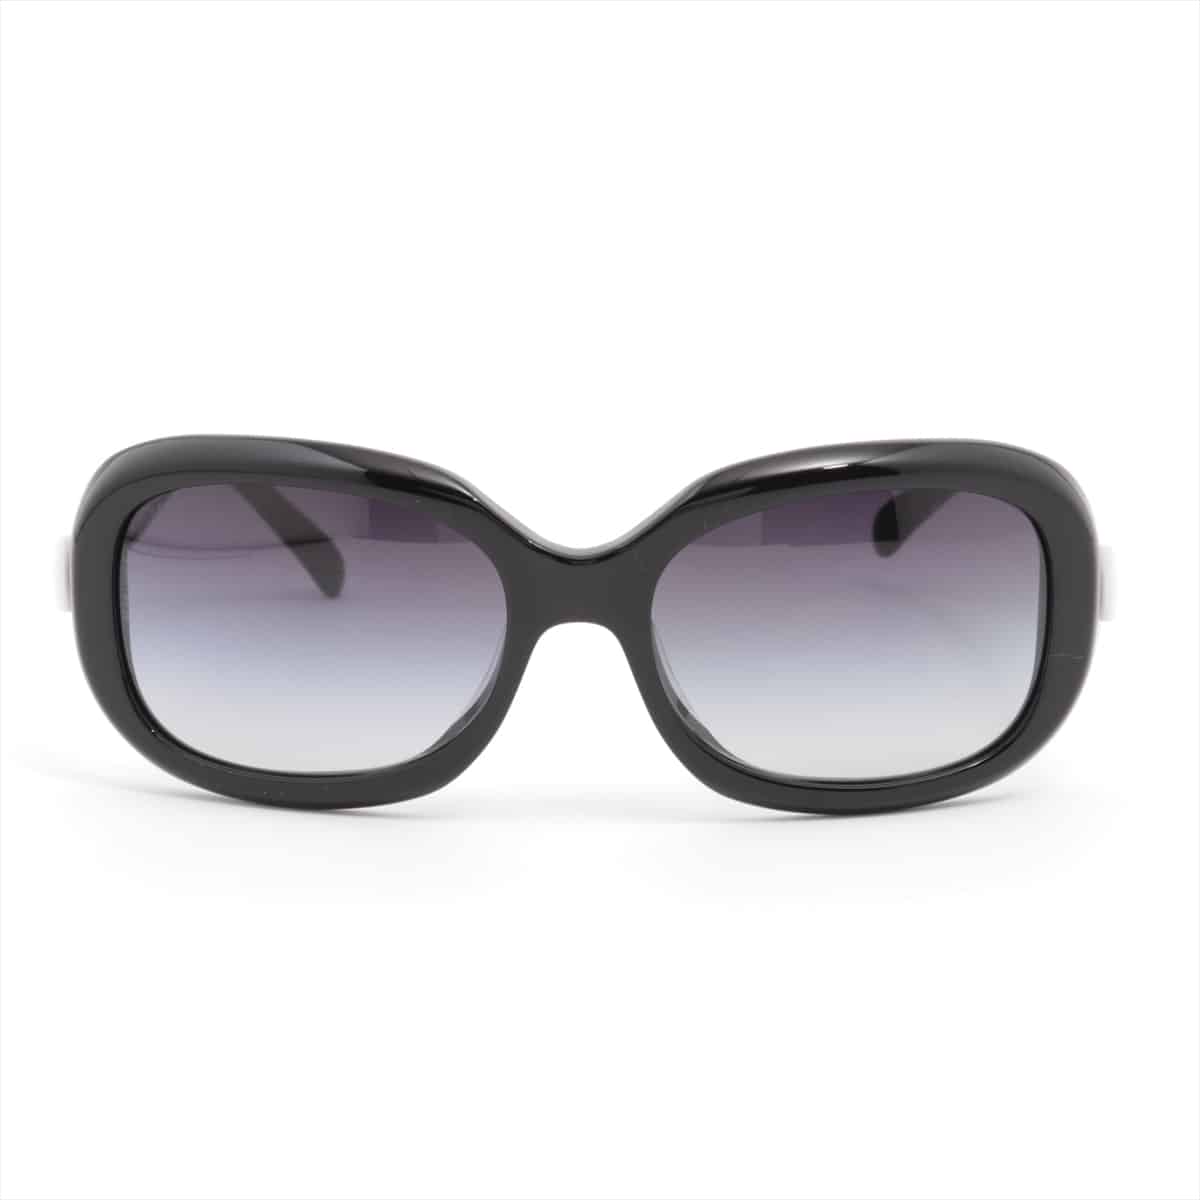 Chanel 5170-A Sunglasses Plastic Black